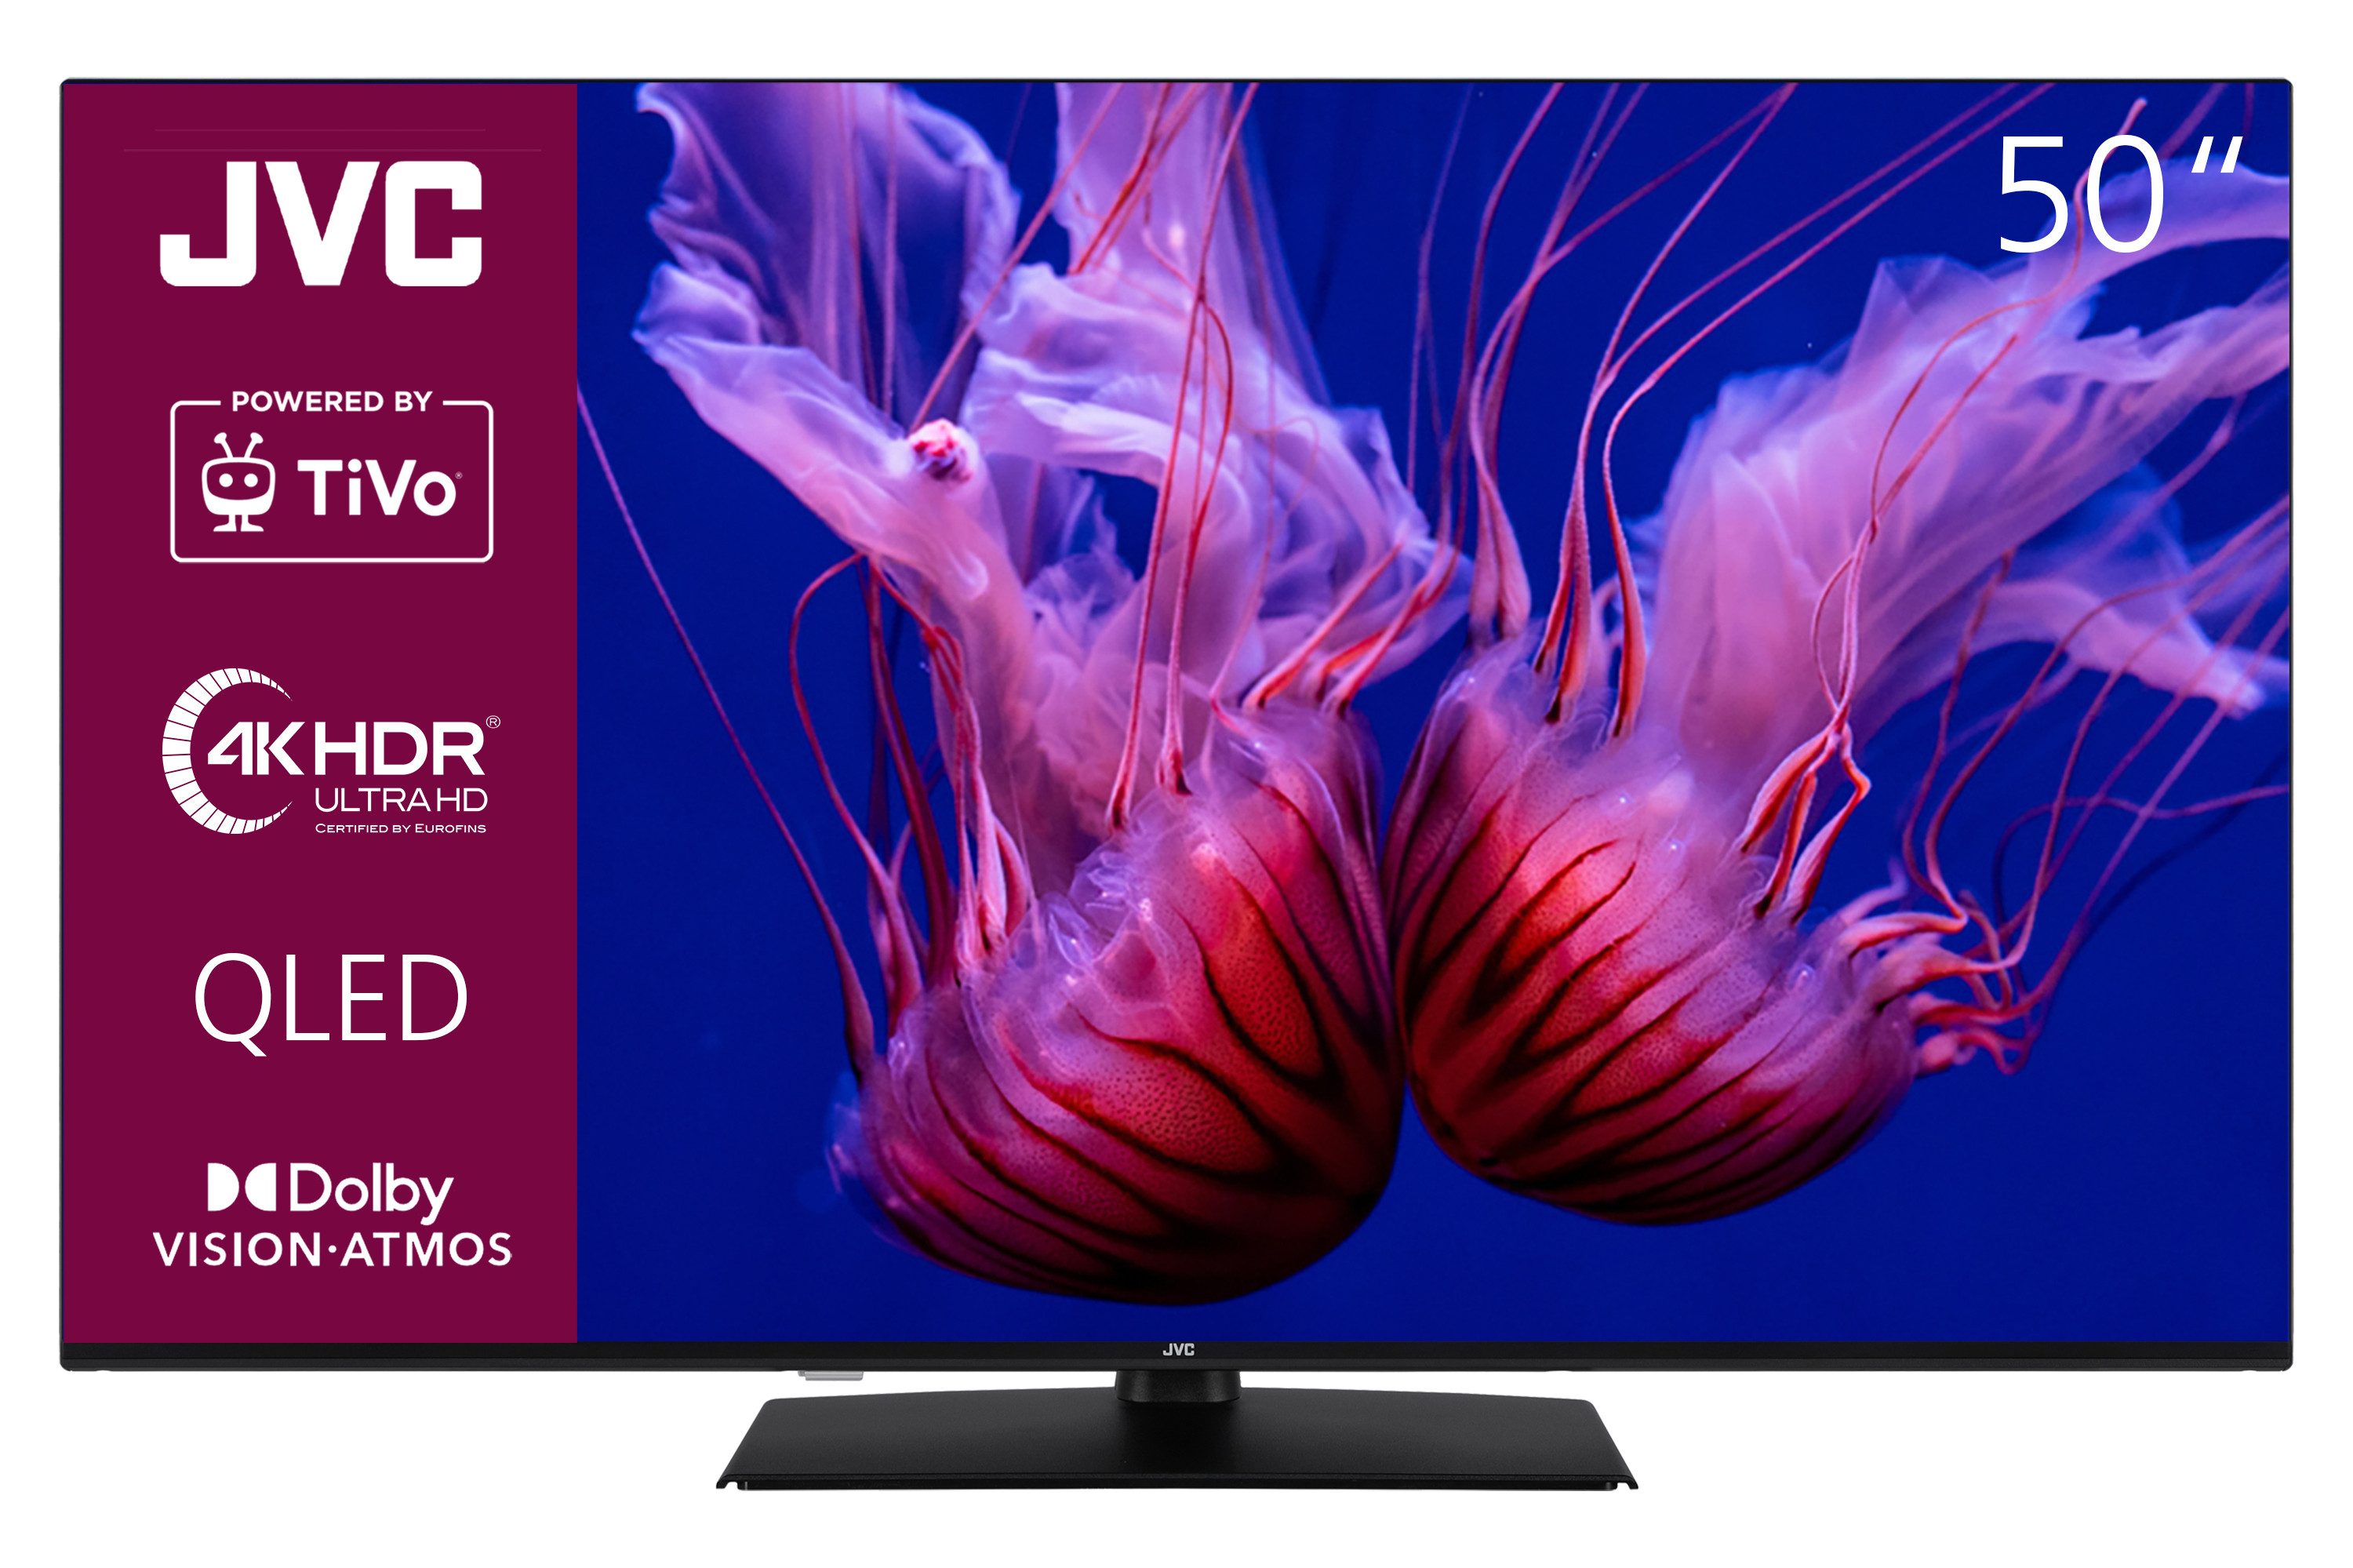 JVC LT-50VUQ3455 QLED-Fernseher (126 cm/50 Zoll, 4K Ultra HD, TiVo Smart TV, TiVo Smart TV, HDR Dolby Vision, Dolby Atmos, Triple-Tuner)